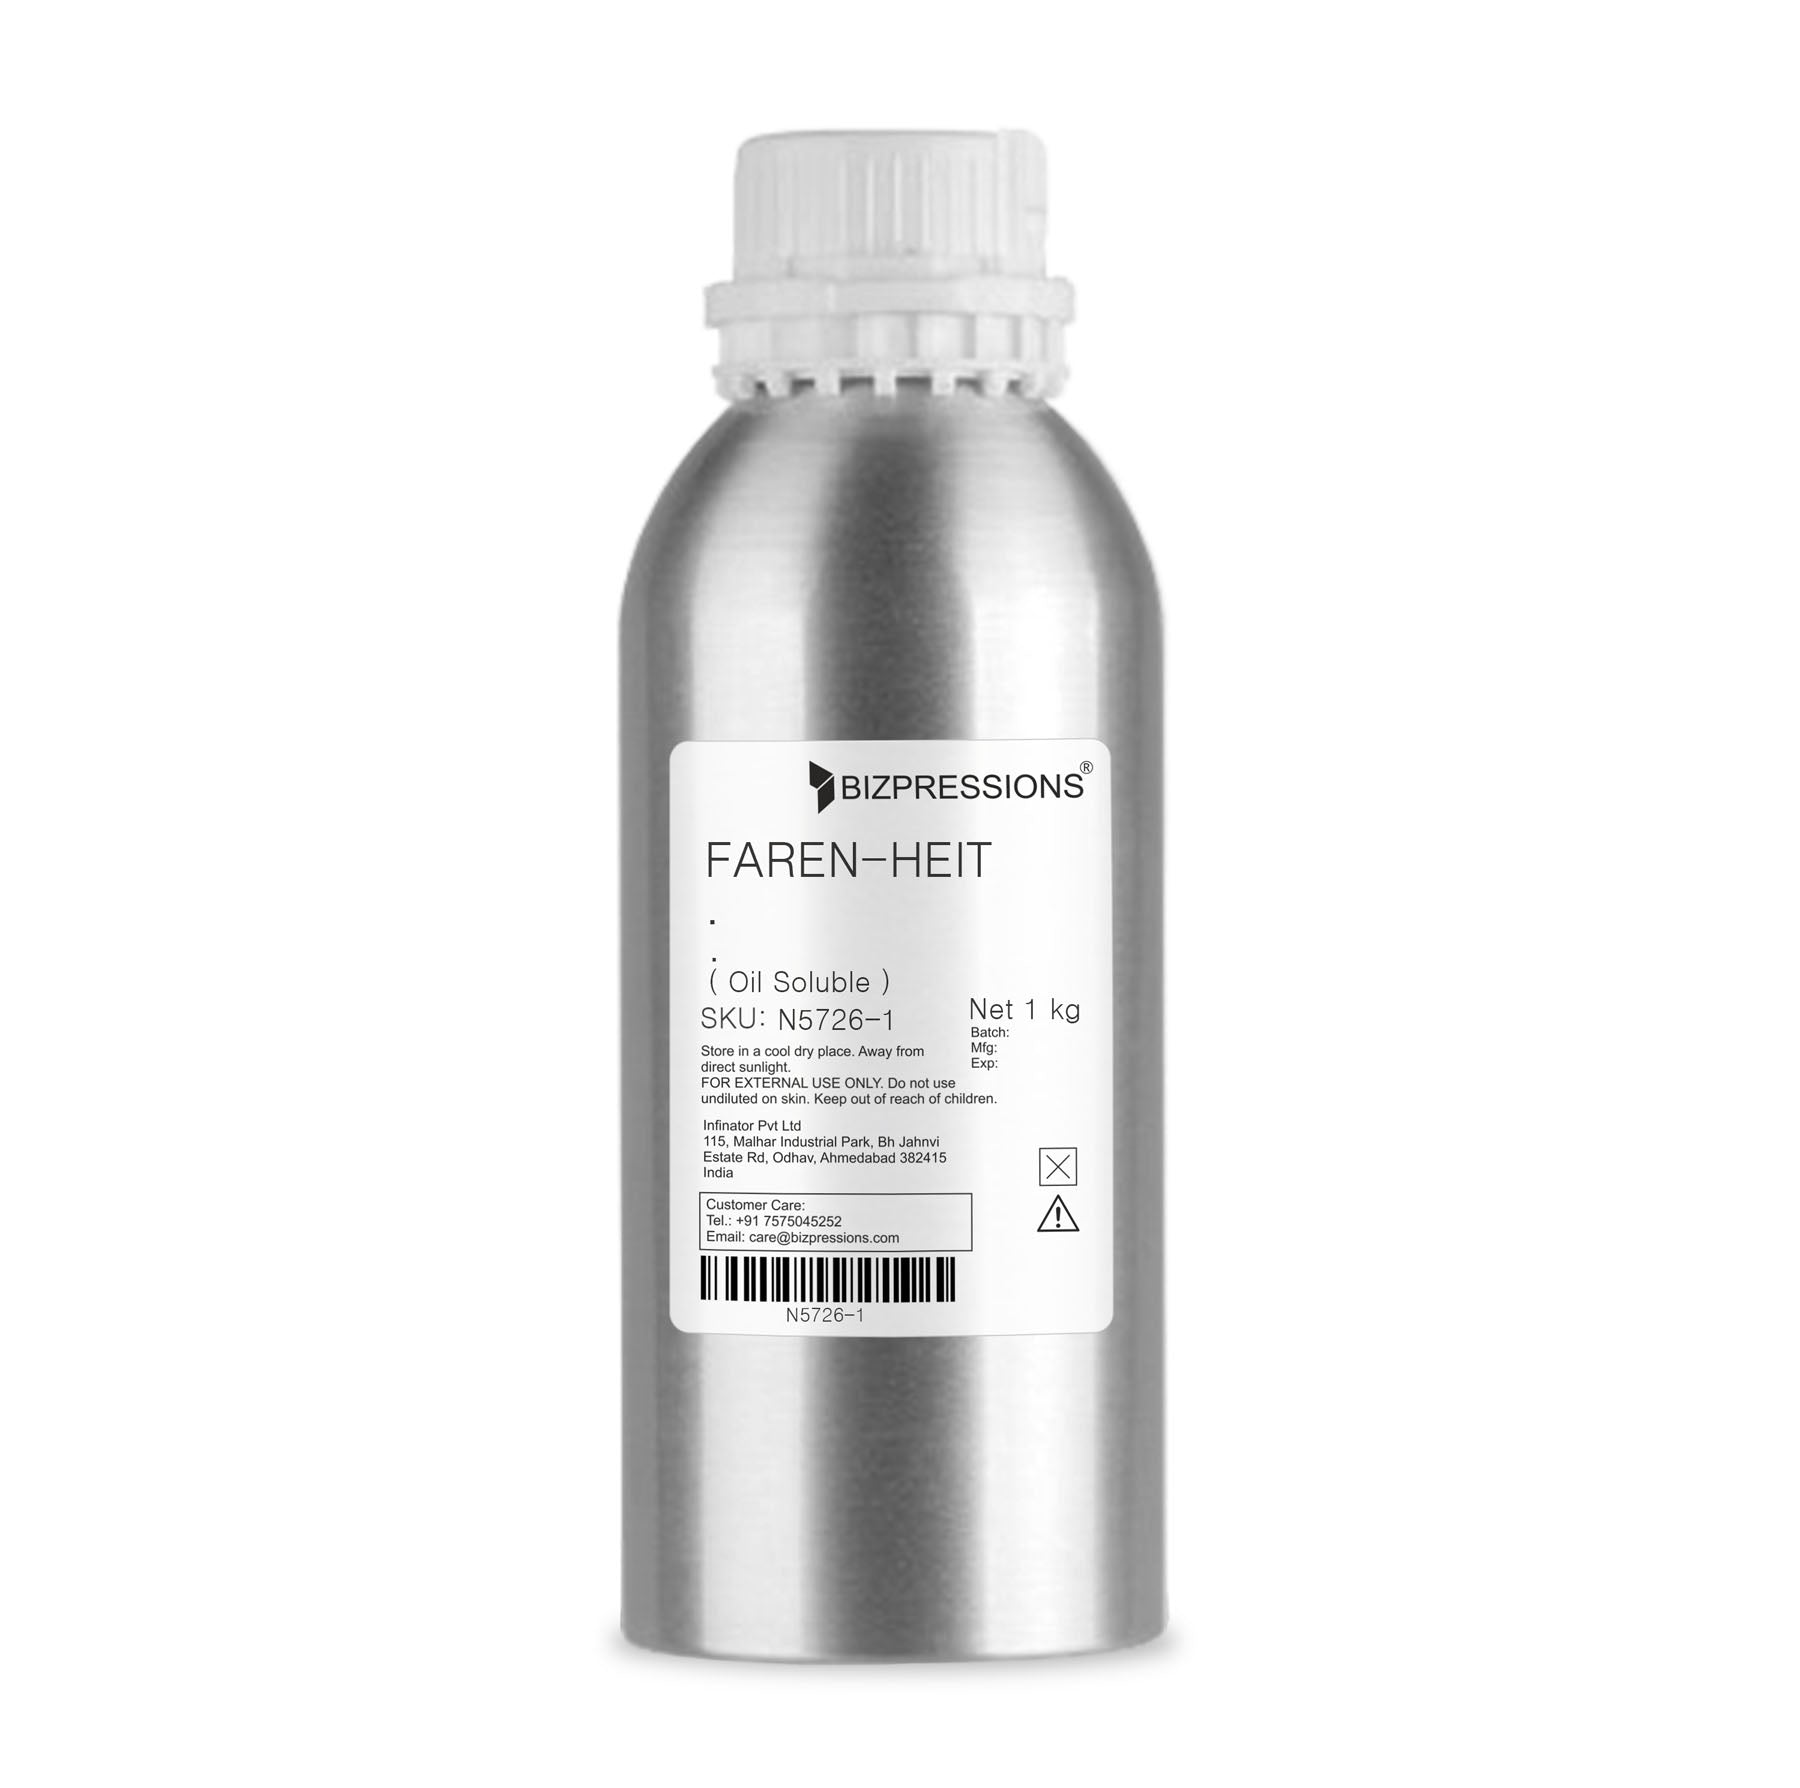 FAREN-HEIT - Fragrance ( Oil Soluble ) - 1 kg